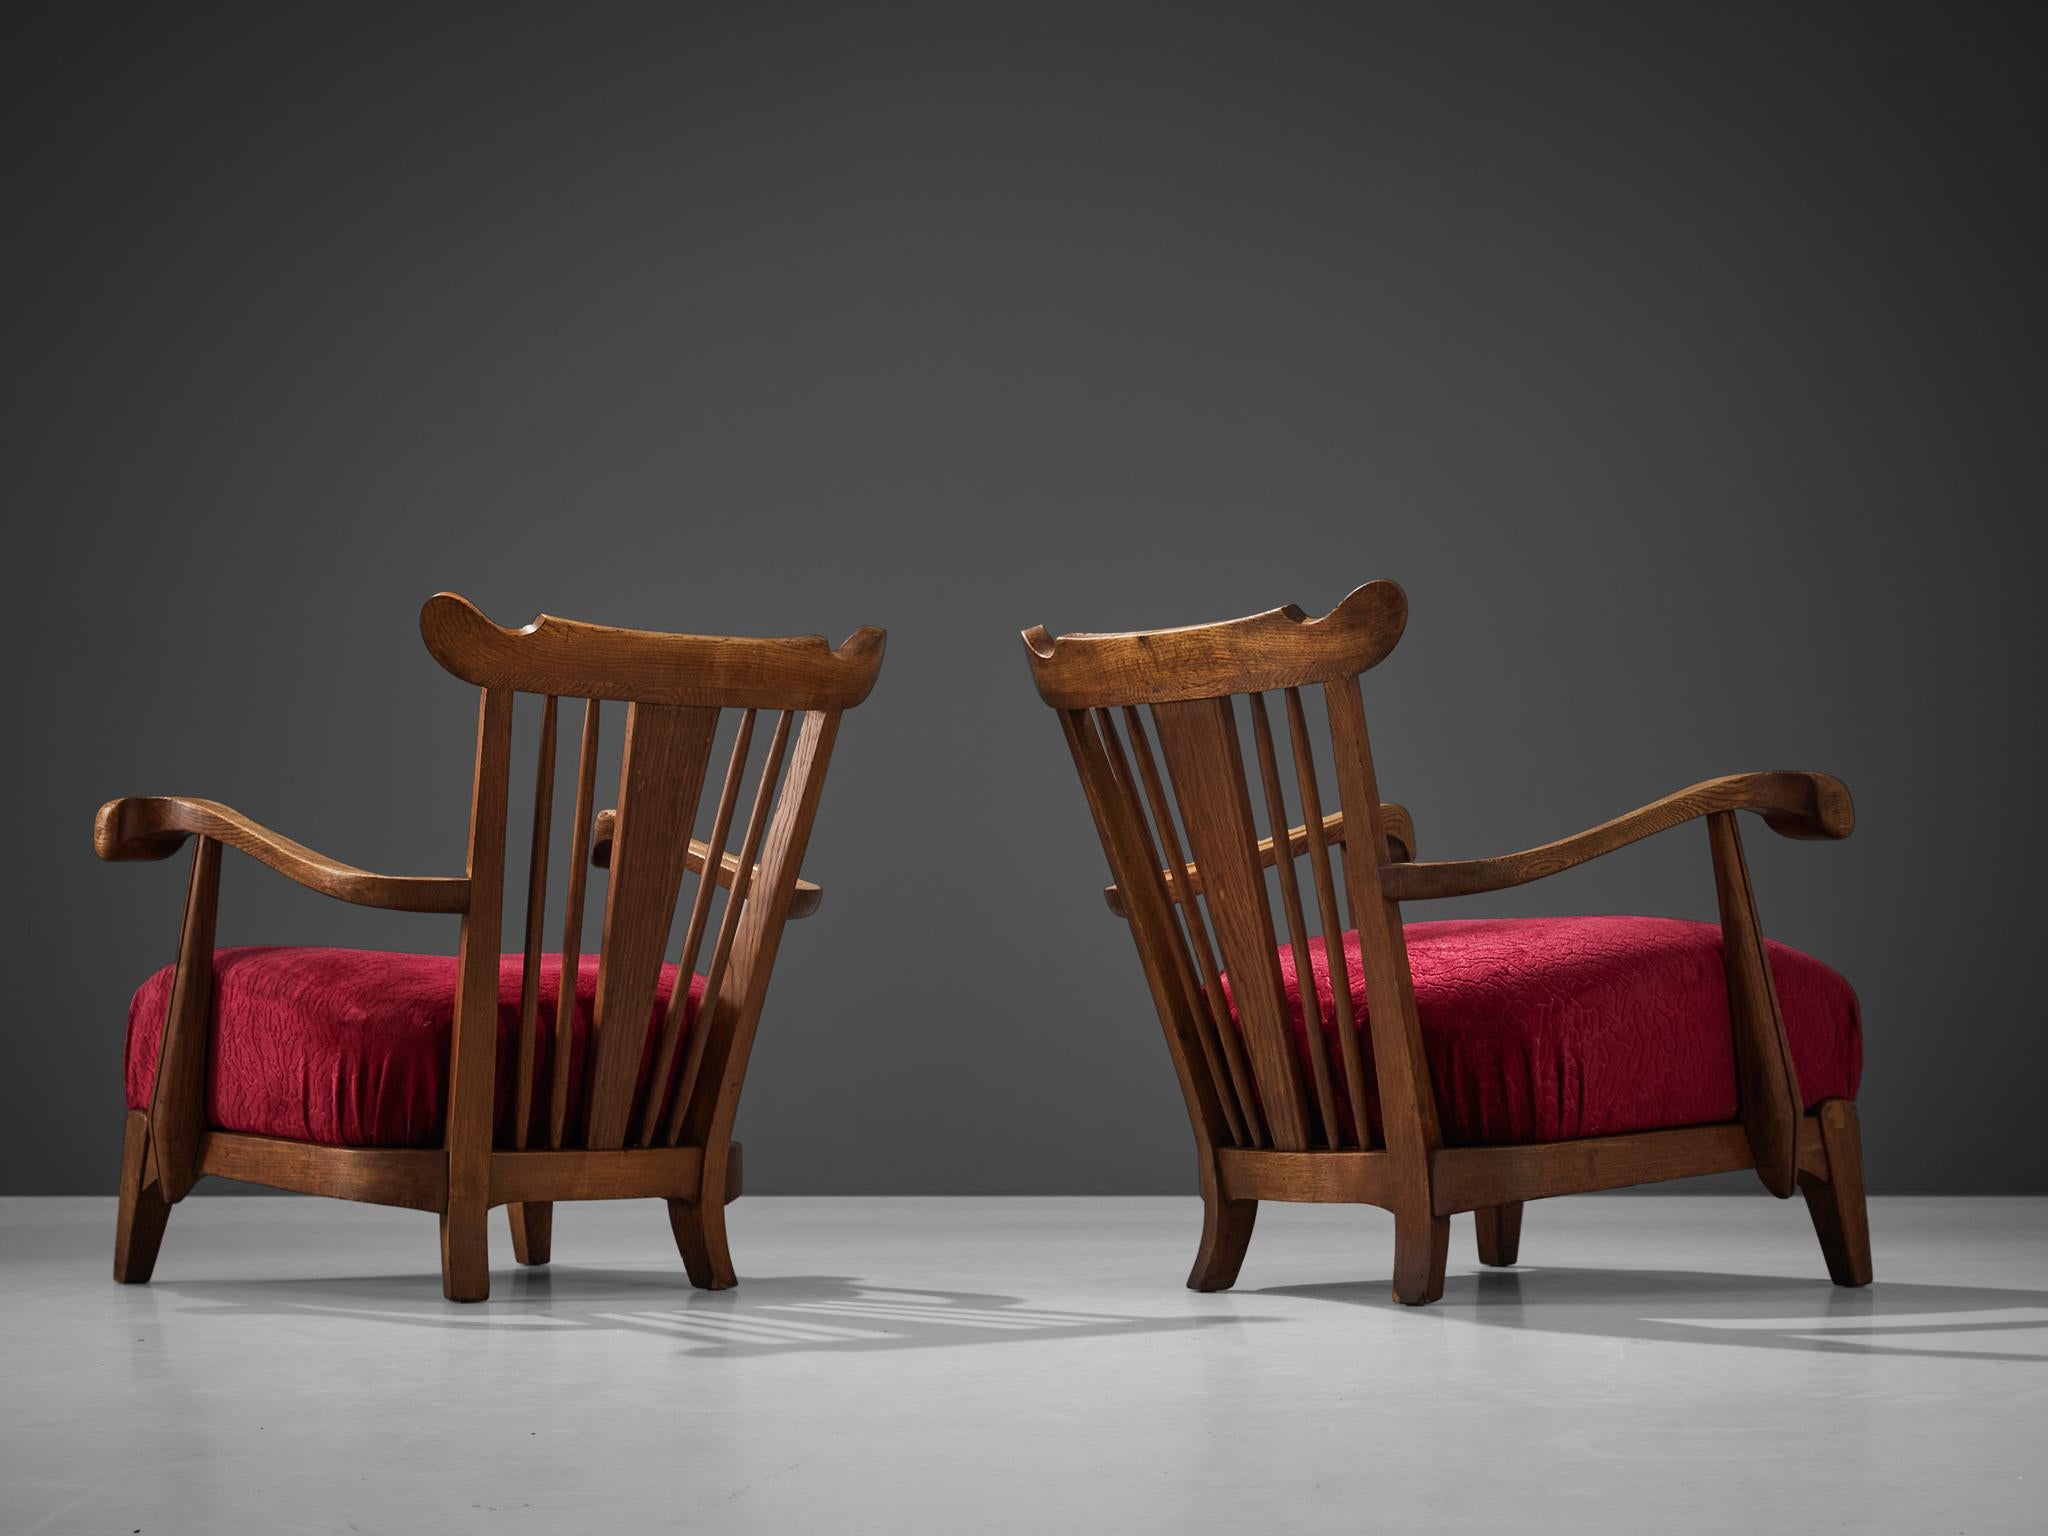 Paar Sessel Eiche, Samt, Frankreich, 1950er Jahre.

Diese formschönen Loungesessel sind durch die im Holzrahmen erkennbaren skulpturalen Elemente auffällig konstruiert. Die Armlehnen zeichnen sich durch geschwungene, kräftige Linien mit